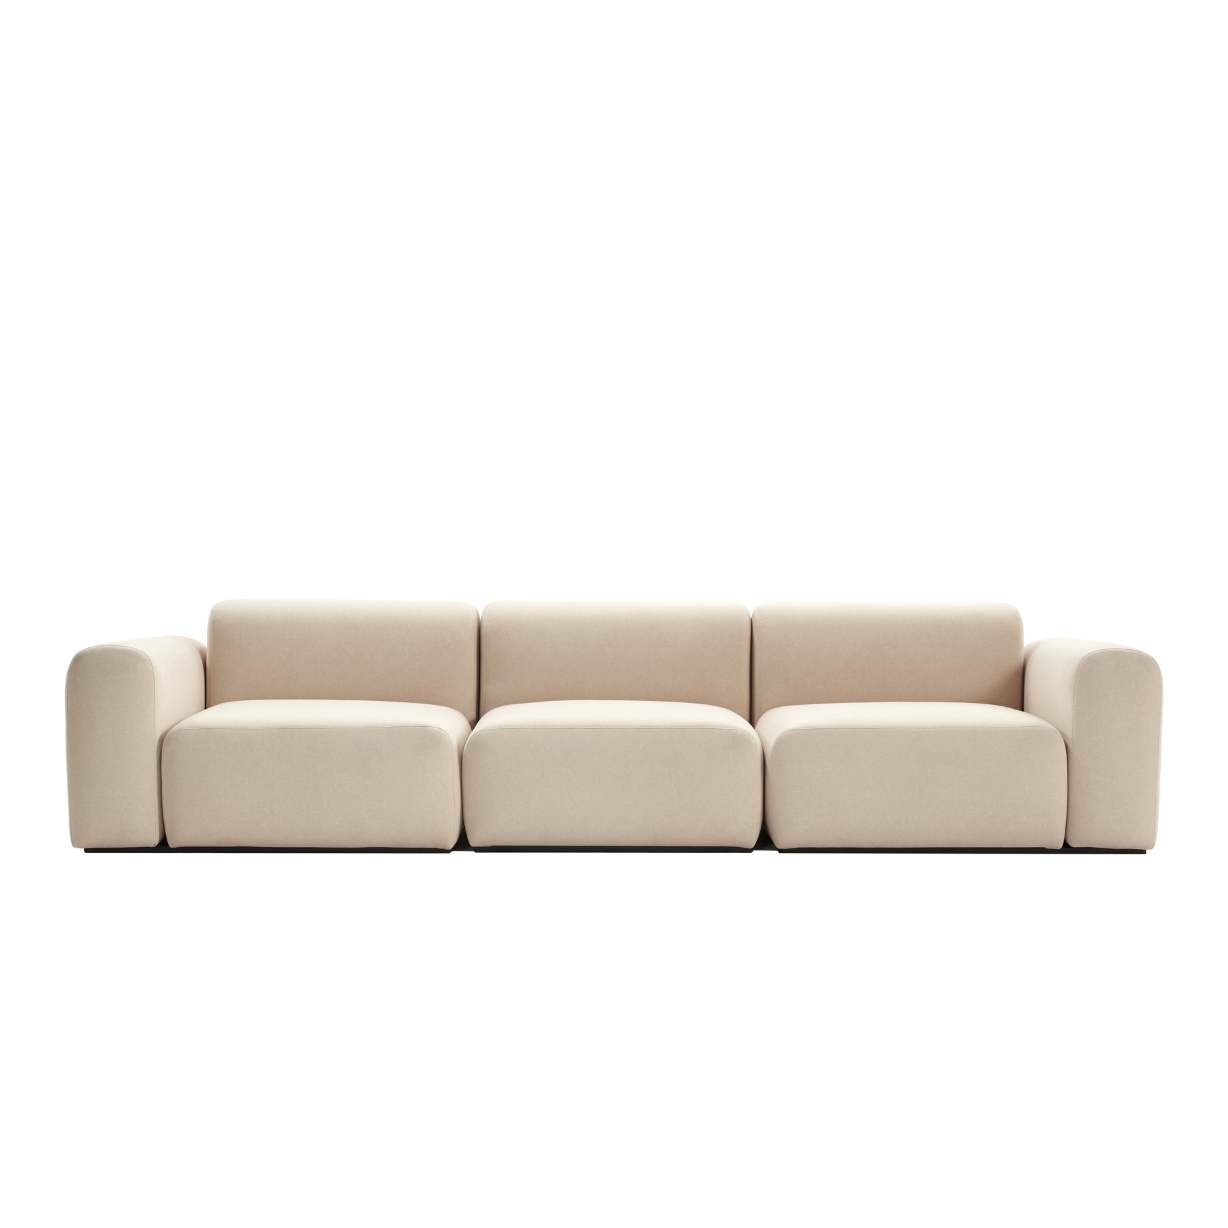 (주)도이치  DOICH ® Aquaclean PEN3 modular sofa  도이치 Pen3  4인소파 (스페인 아쿠아클린)  [3주 주문제작]